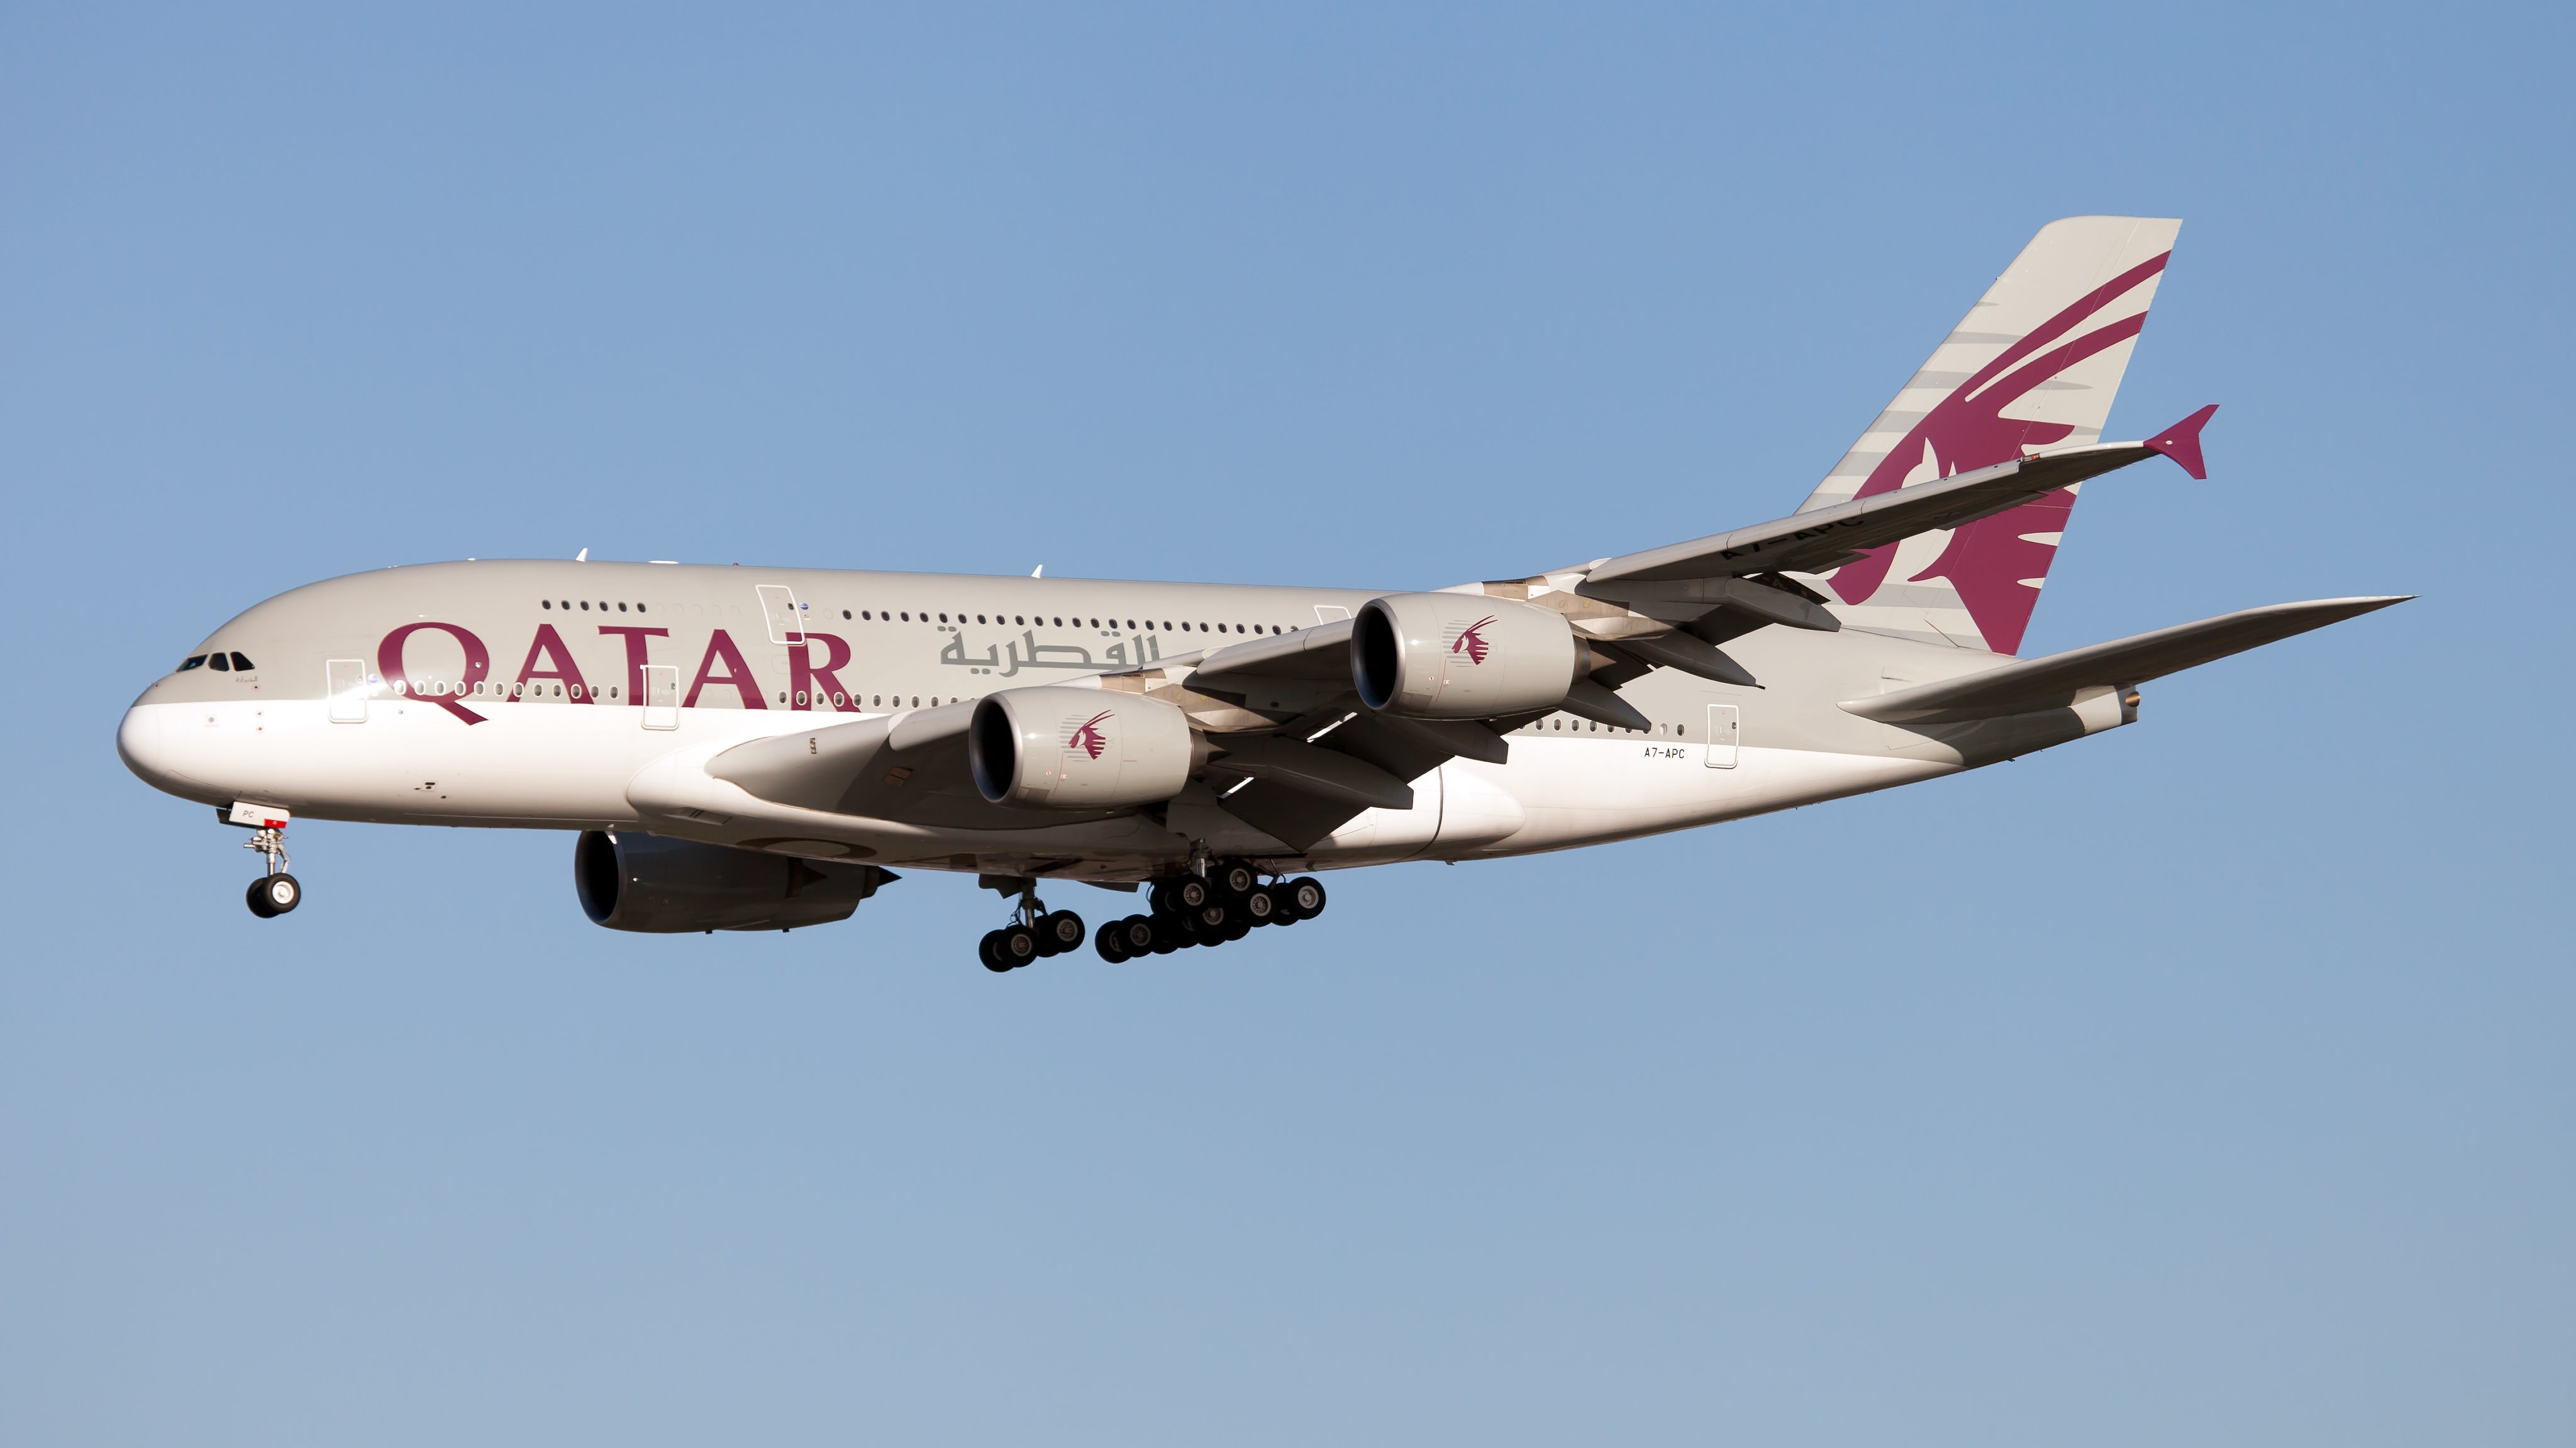 A Qatar Airways Airbus 380 lands at London Heathrow airport